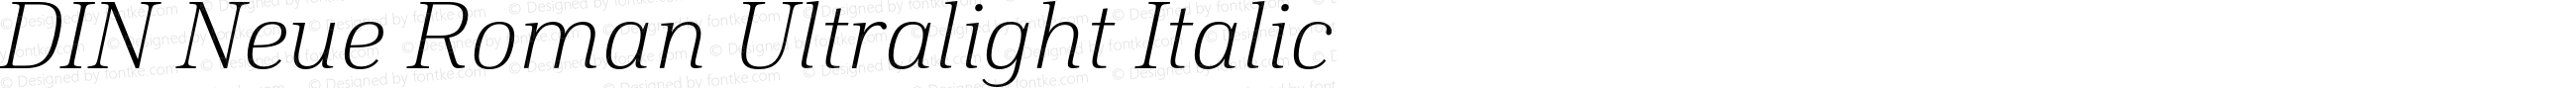 DIN Neue Roman Ultralight Italic